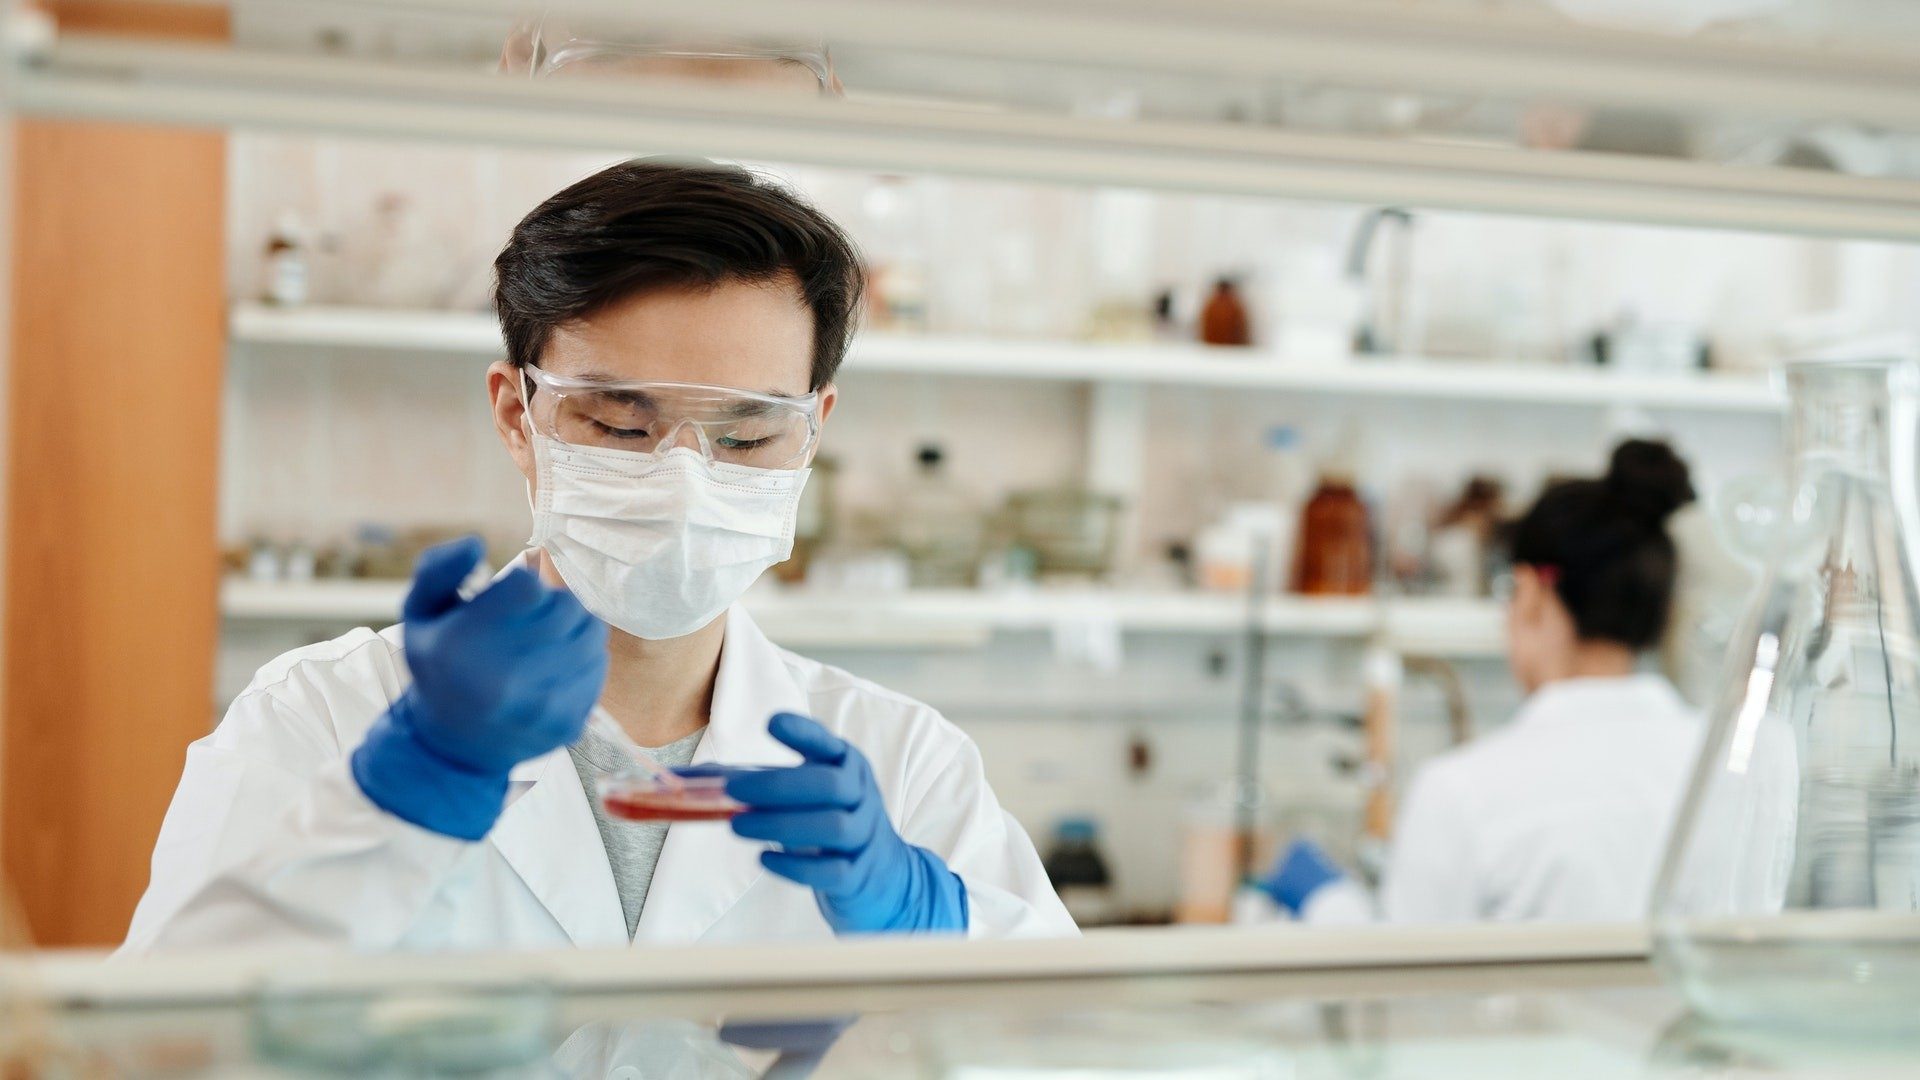 Ein Mann mit Maske im Labor untersucht eine Probe in einer Petrischale